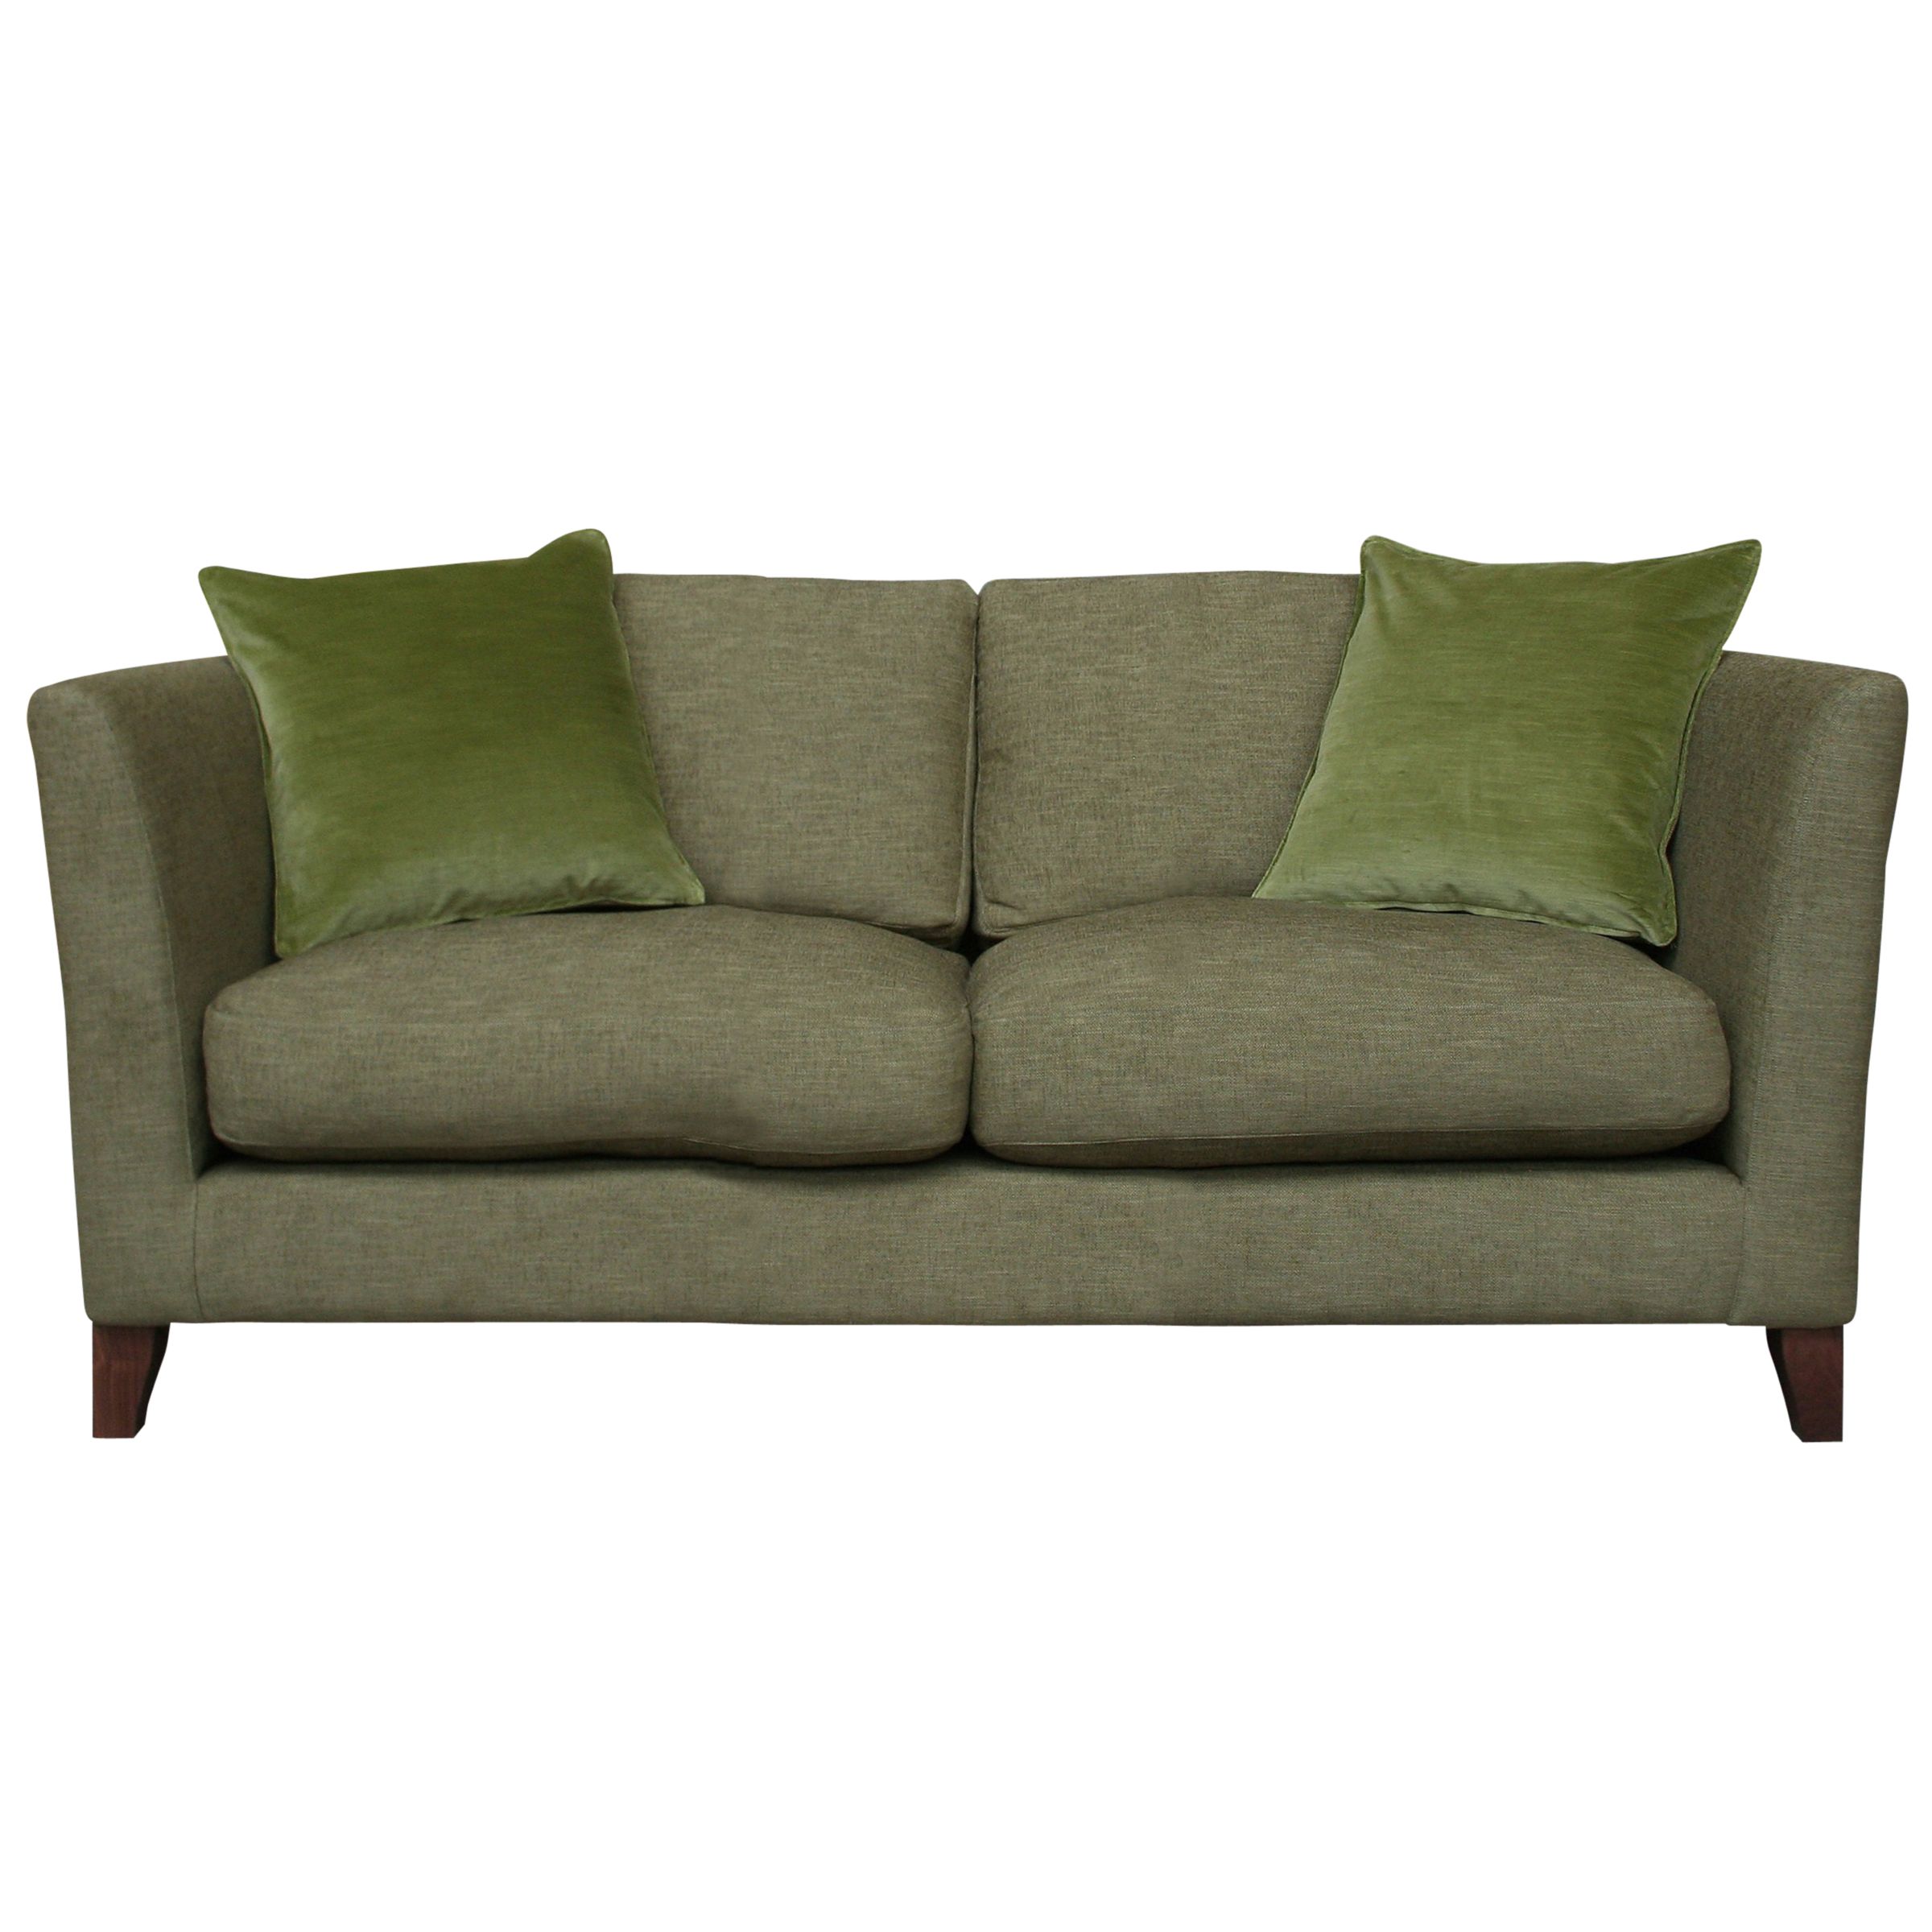 Nick Munro Collection Cushion Back Large Sofa, Allegra Willow at John Lewis